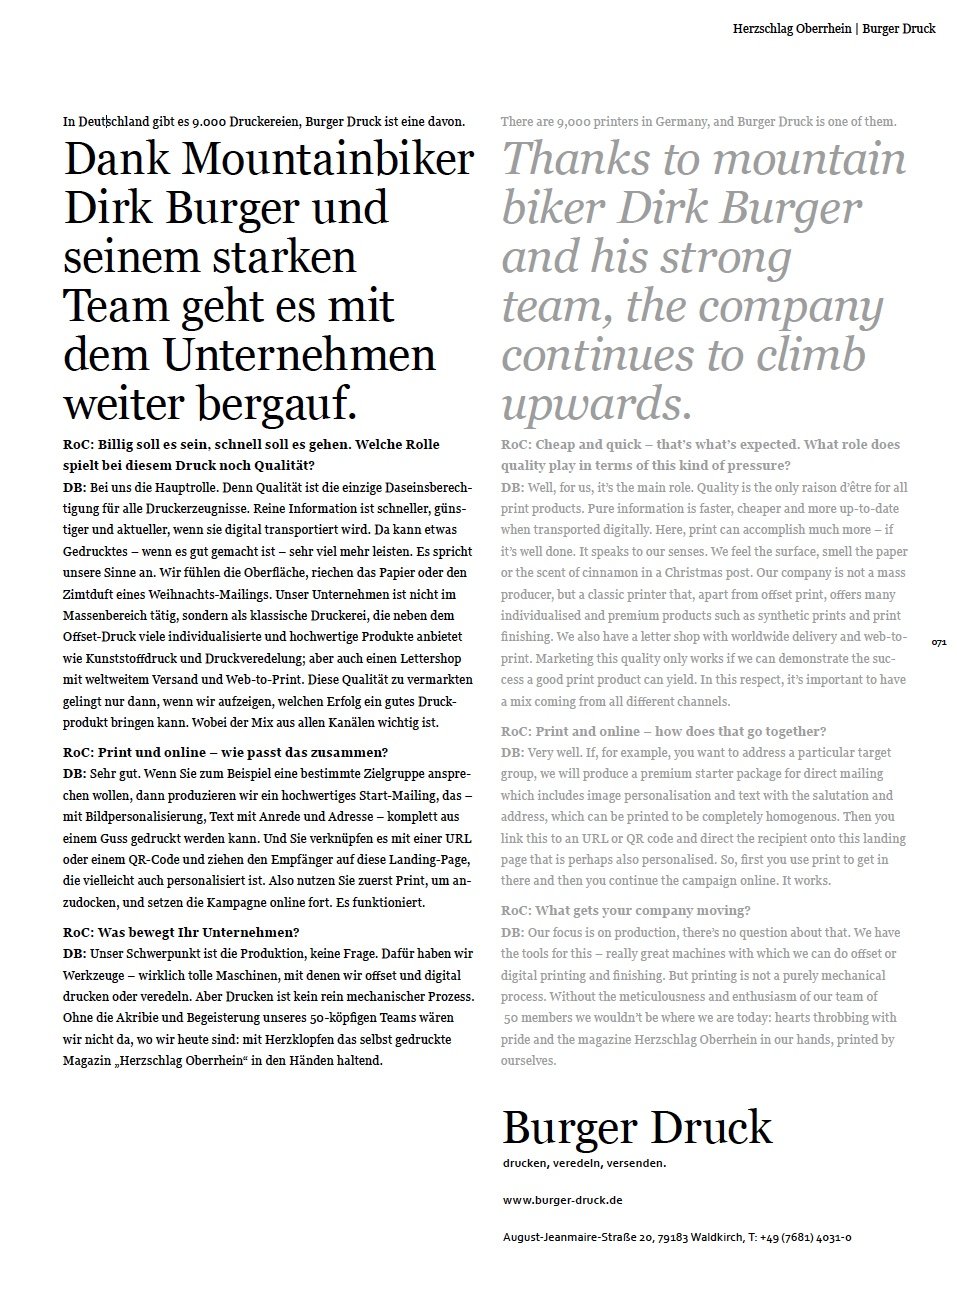 Interview Dirk Burger, Magazin Herzschlag Oberrhein, Seite 71, "Text plus Konzept"